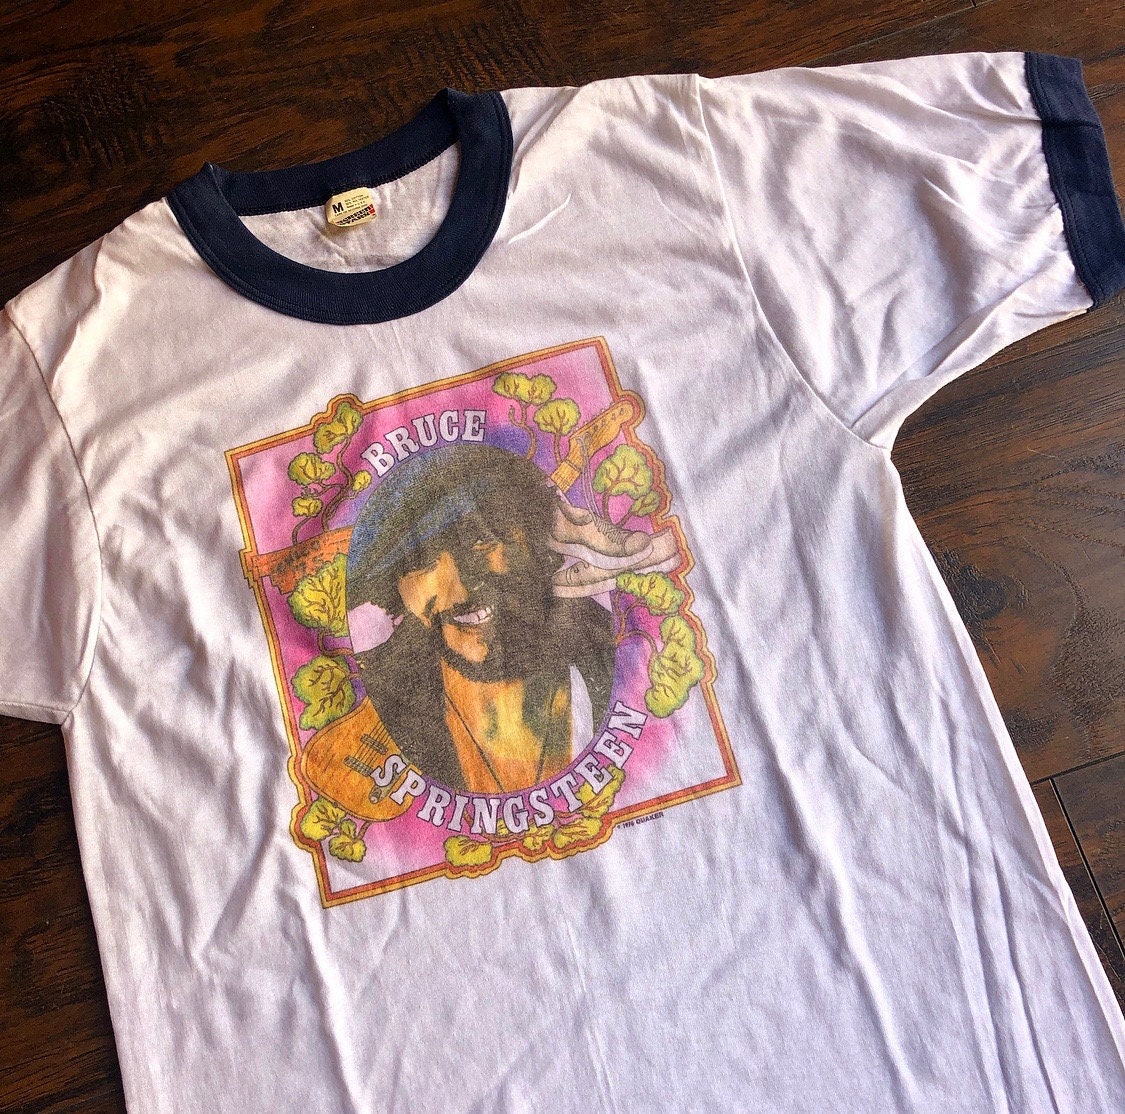 Vintage deadstock Bruce Springsteen ringer band tee shirt women's size ...